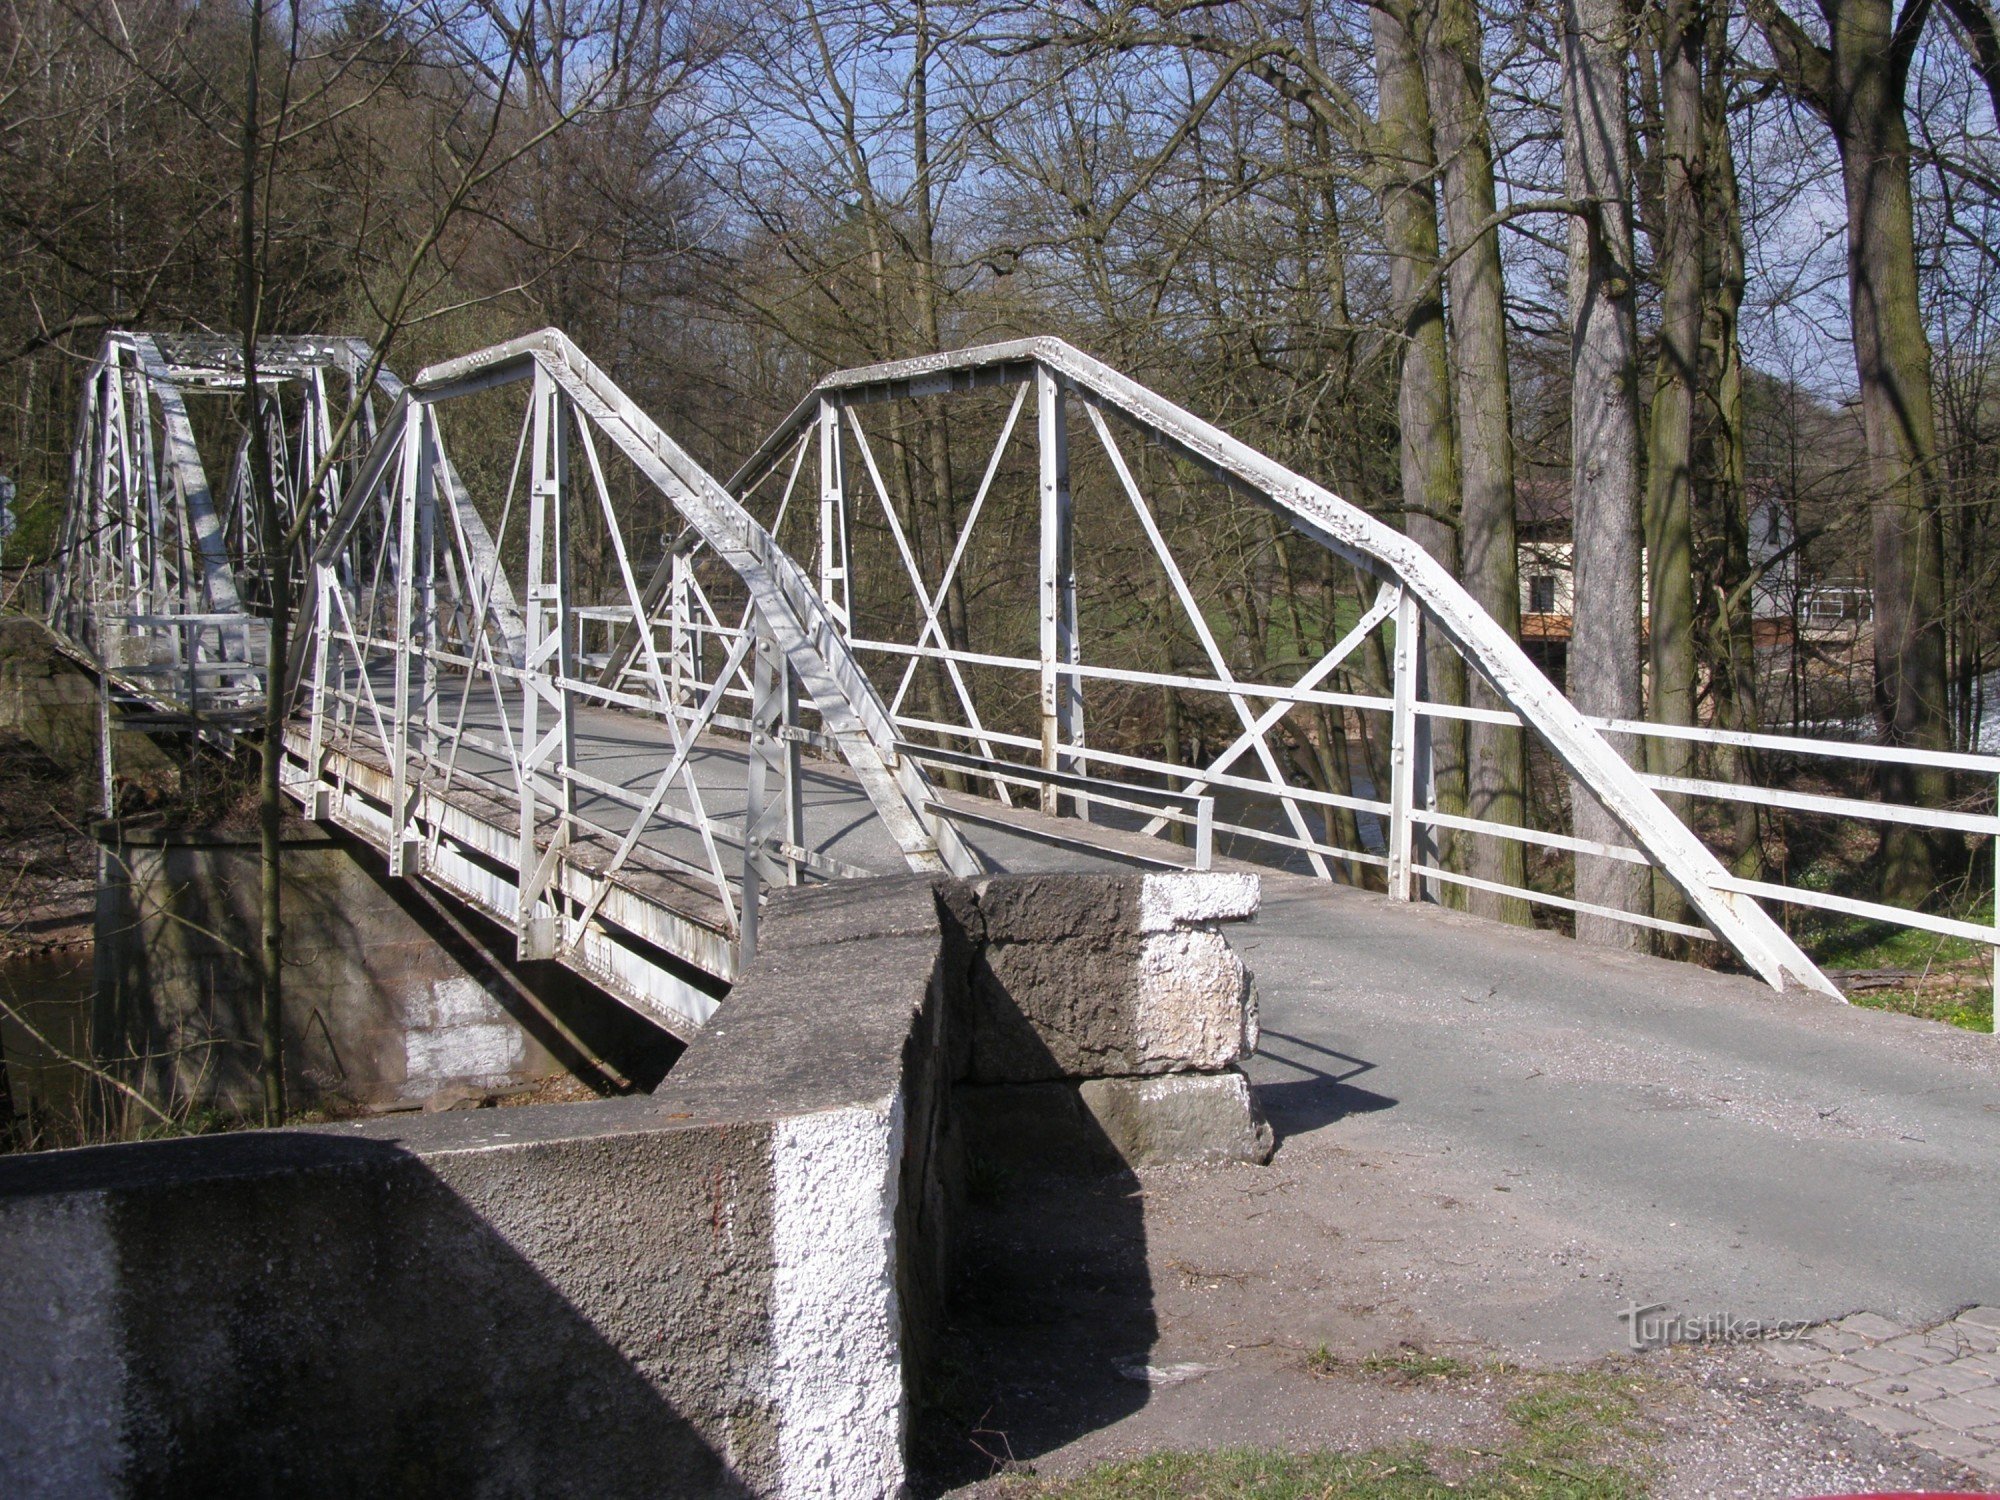 encruzilhada turística Stanovice - perto da ponte